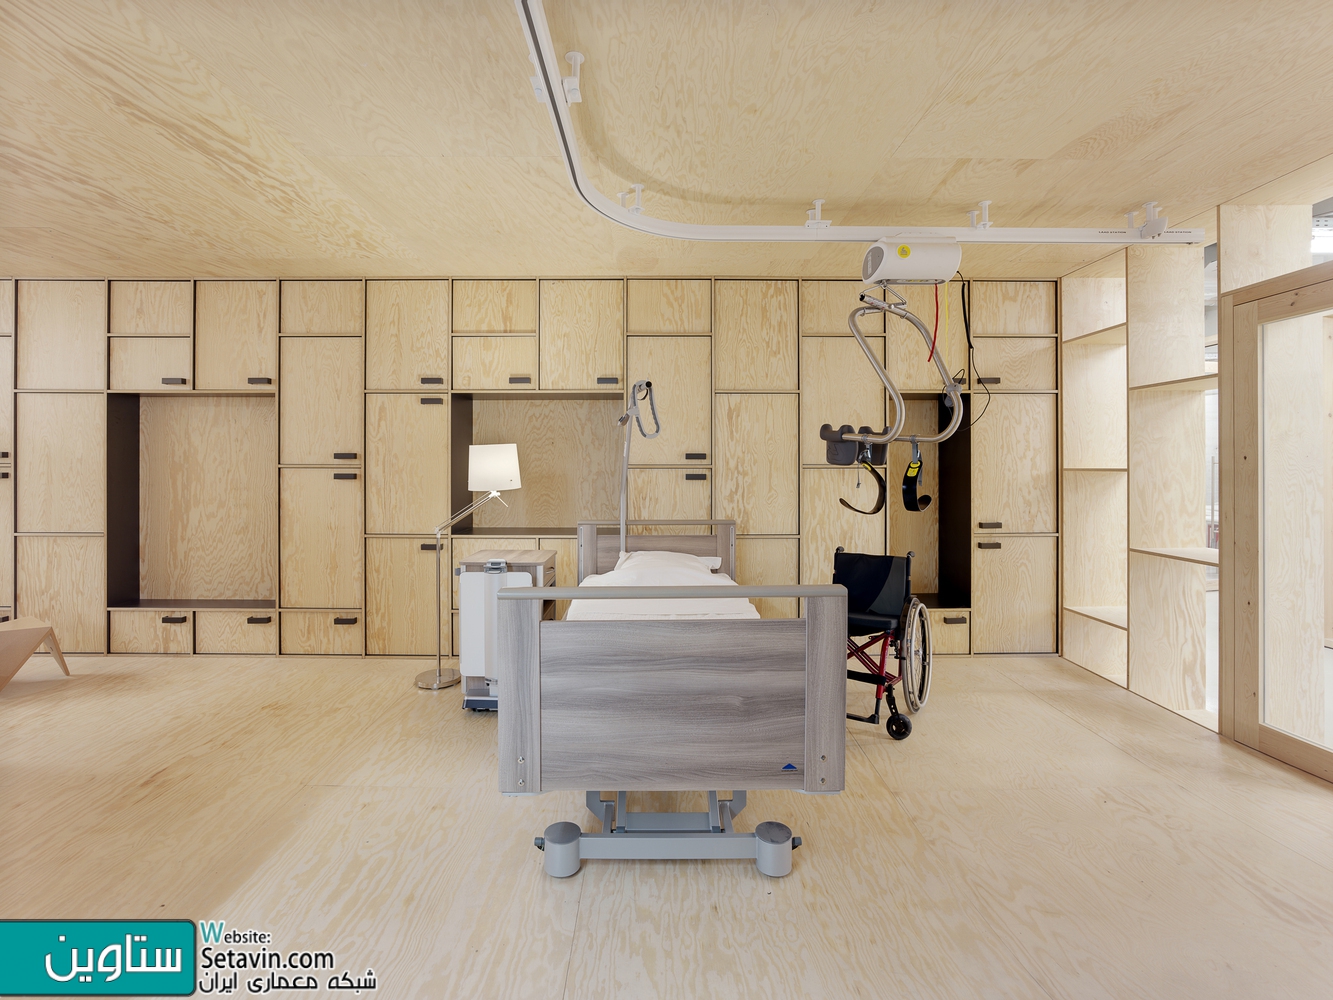 اتاق های انتظار ،فضاهای پذیرش و حیاط ها:43 نمونه قابل توجه از معماری فضاهای بیمارستان